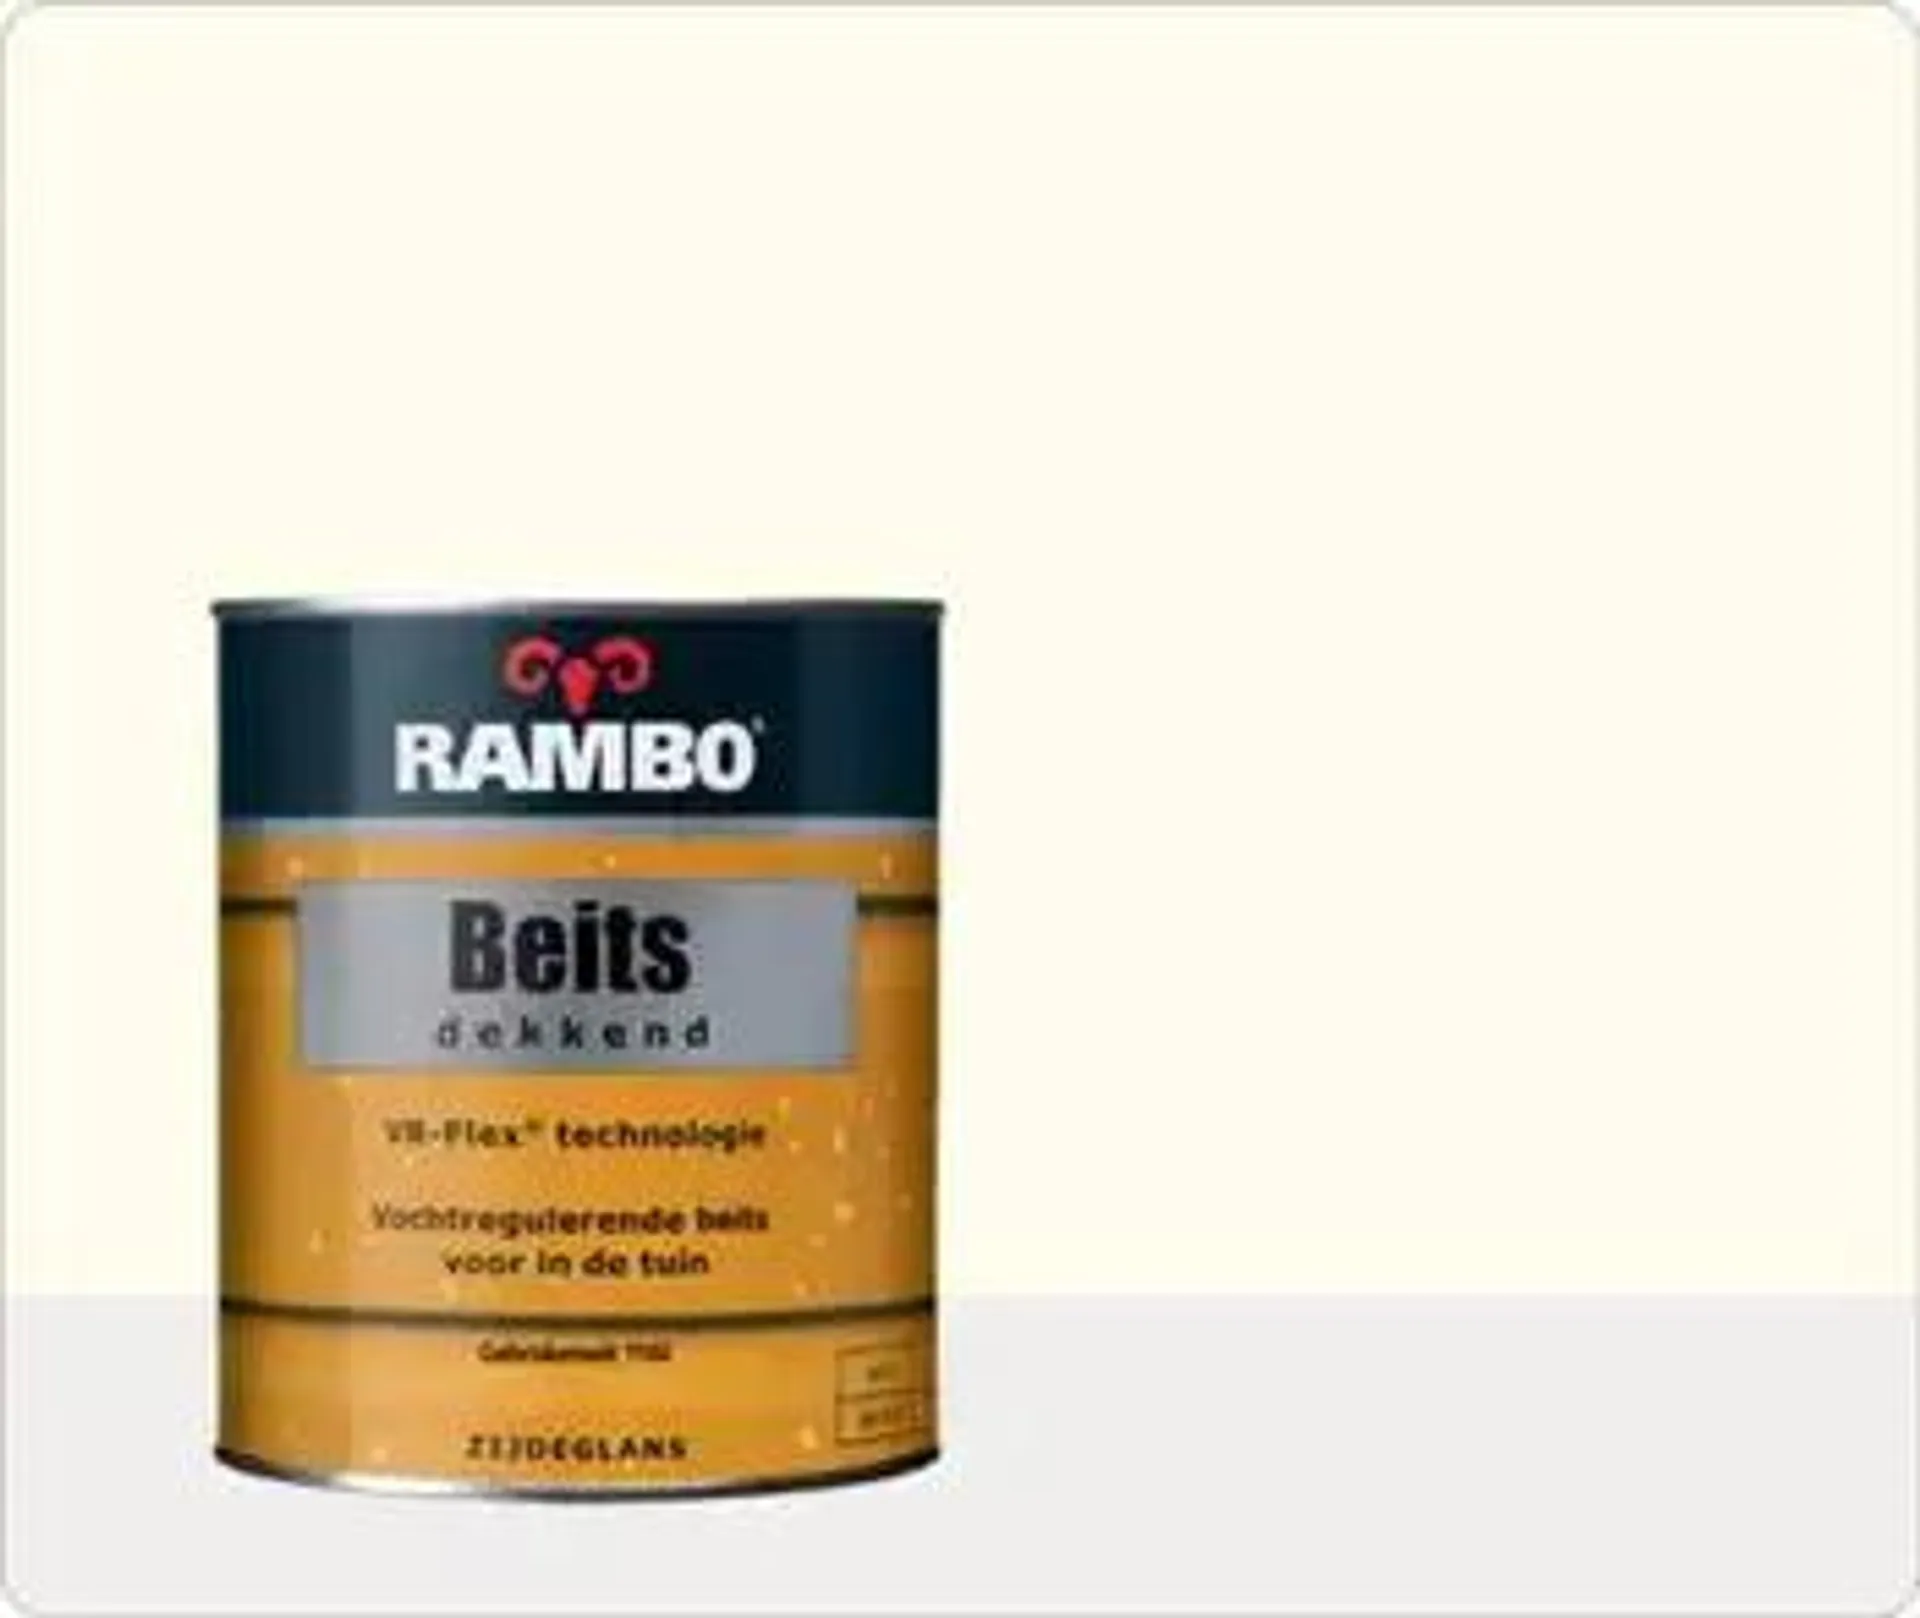 Rambo Beits Dekkend Gebroken Wit 1102